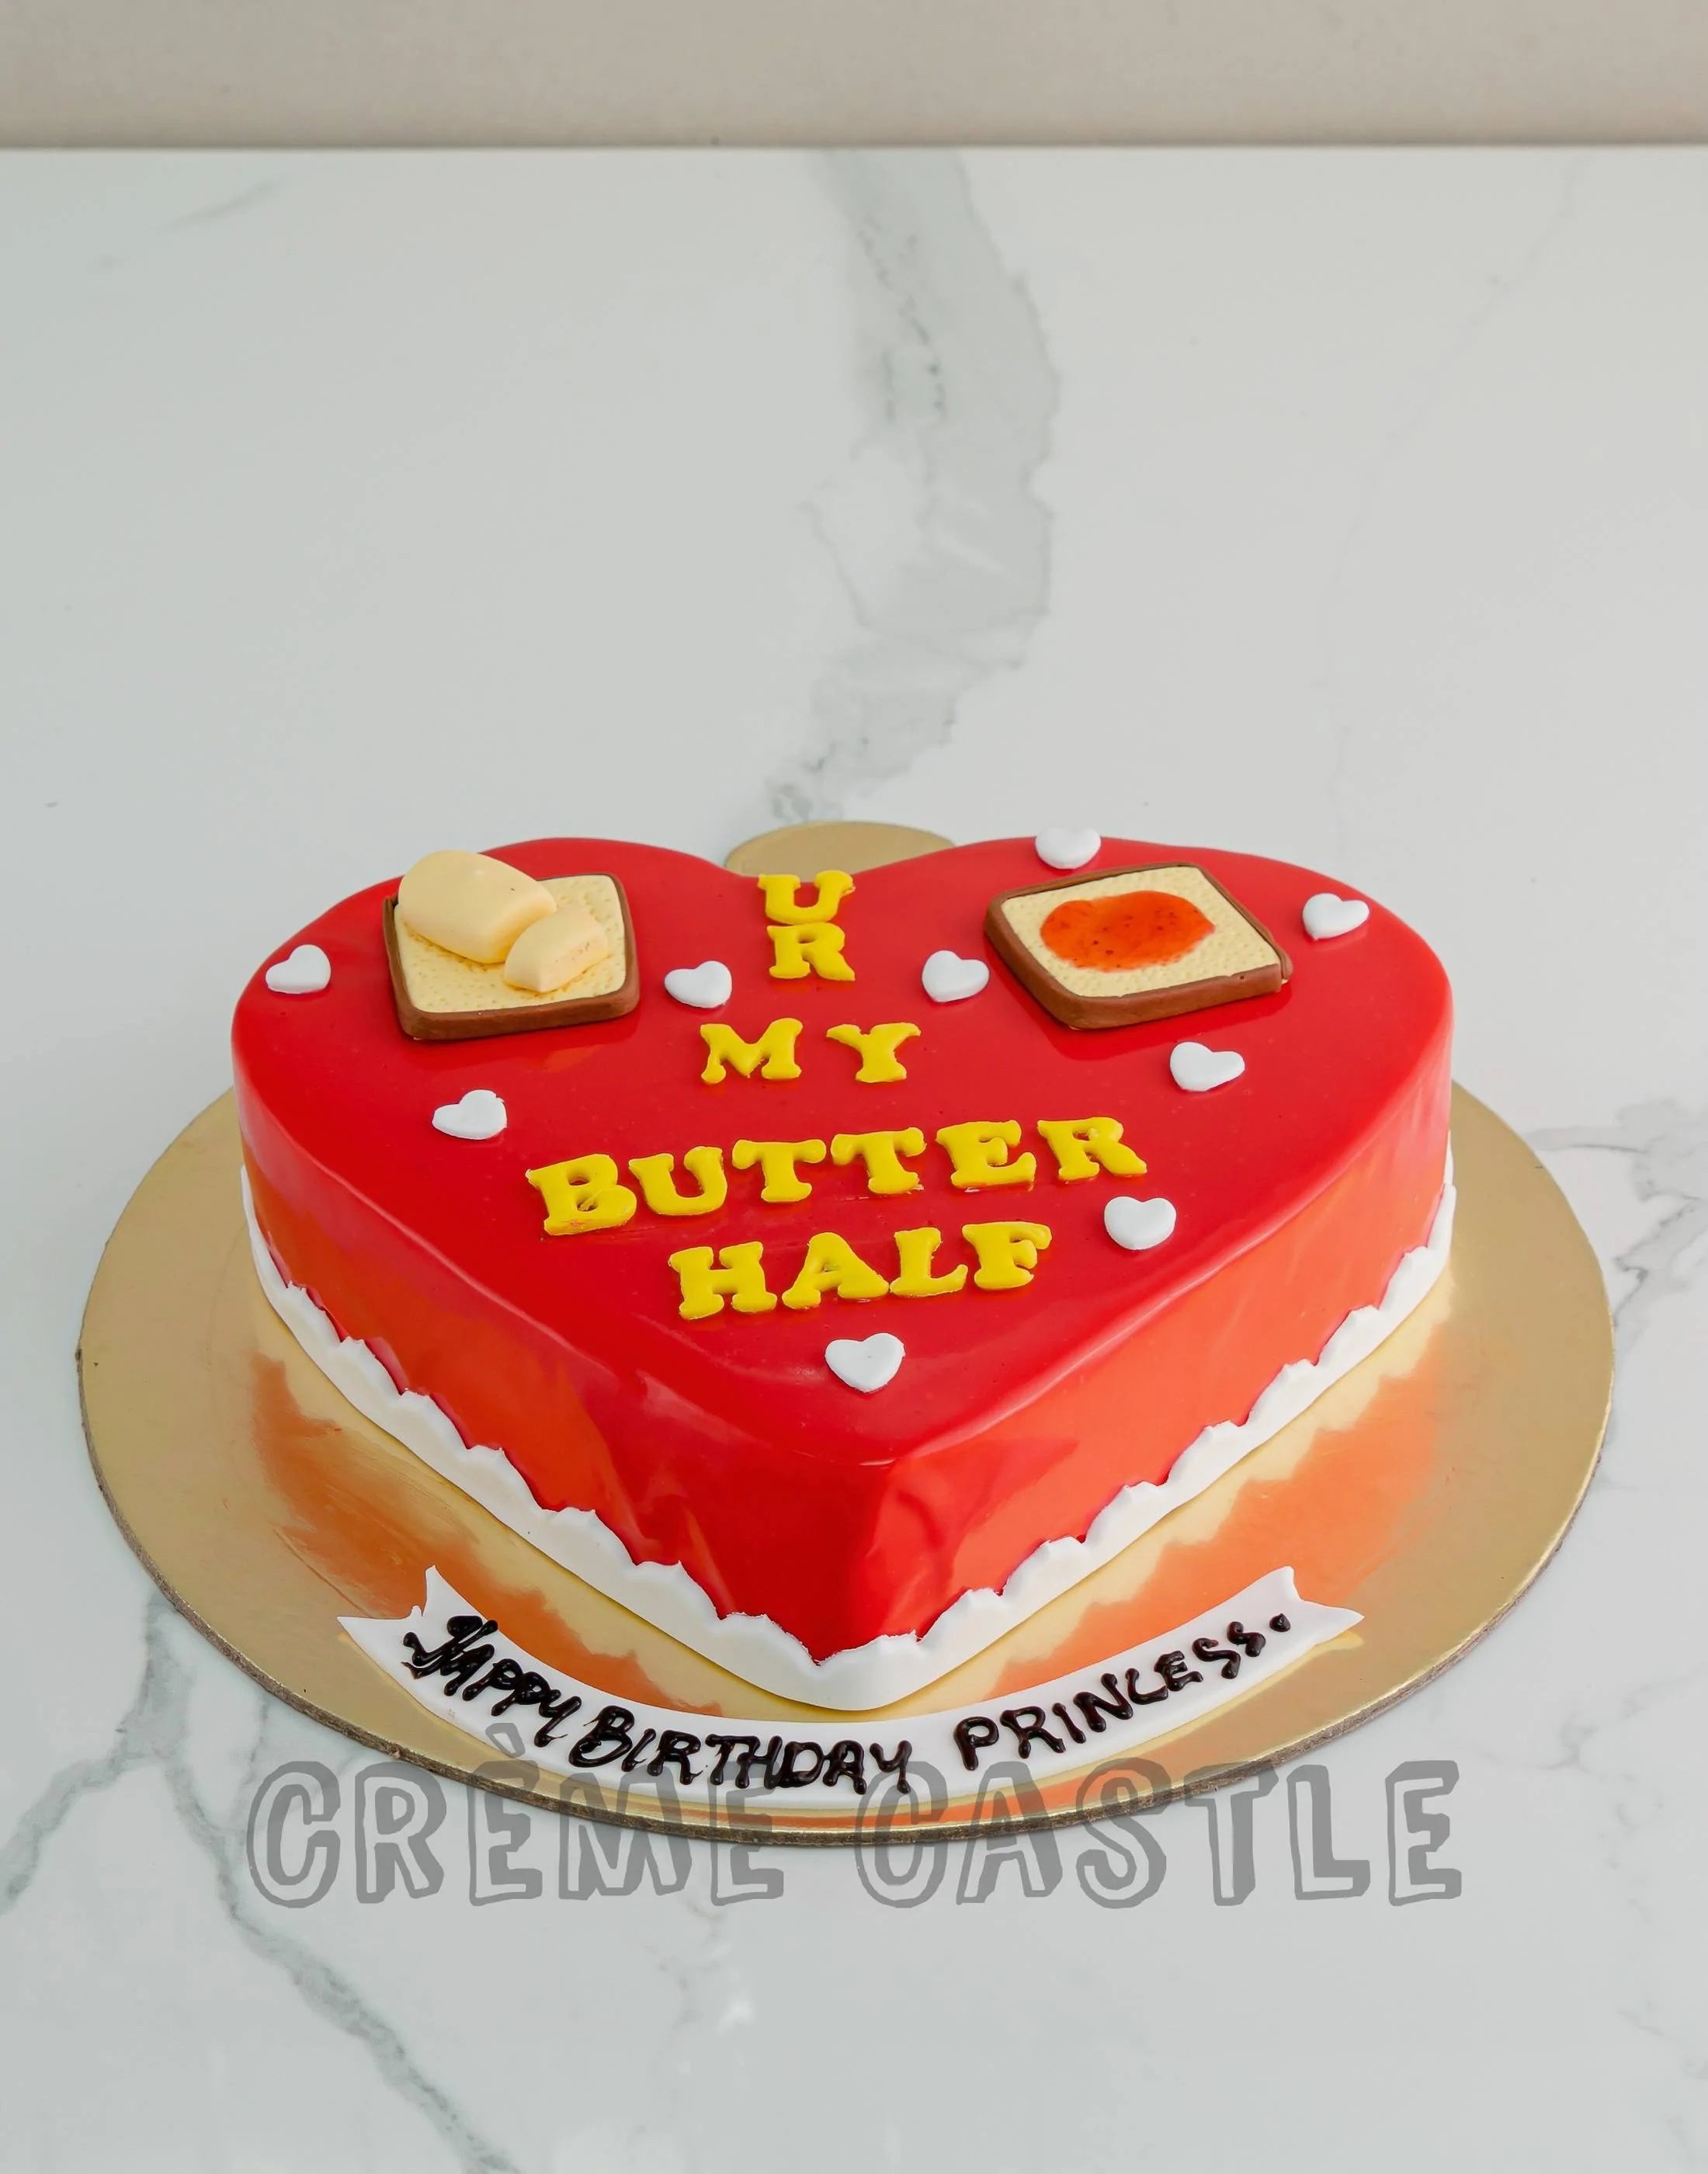 Popular Cakes For Boyfriend - Customised Cakes in Singapore – Honeypeachsg  Bakery